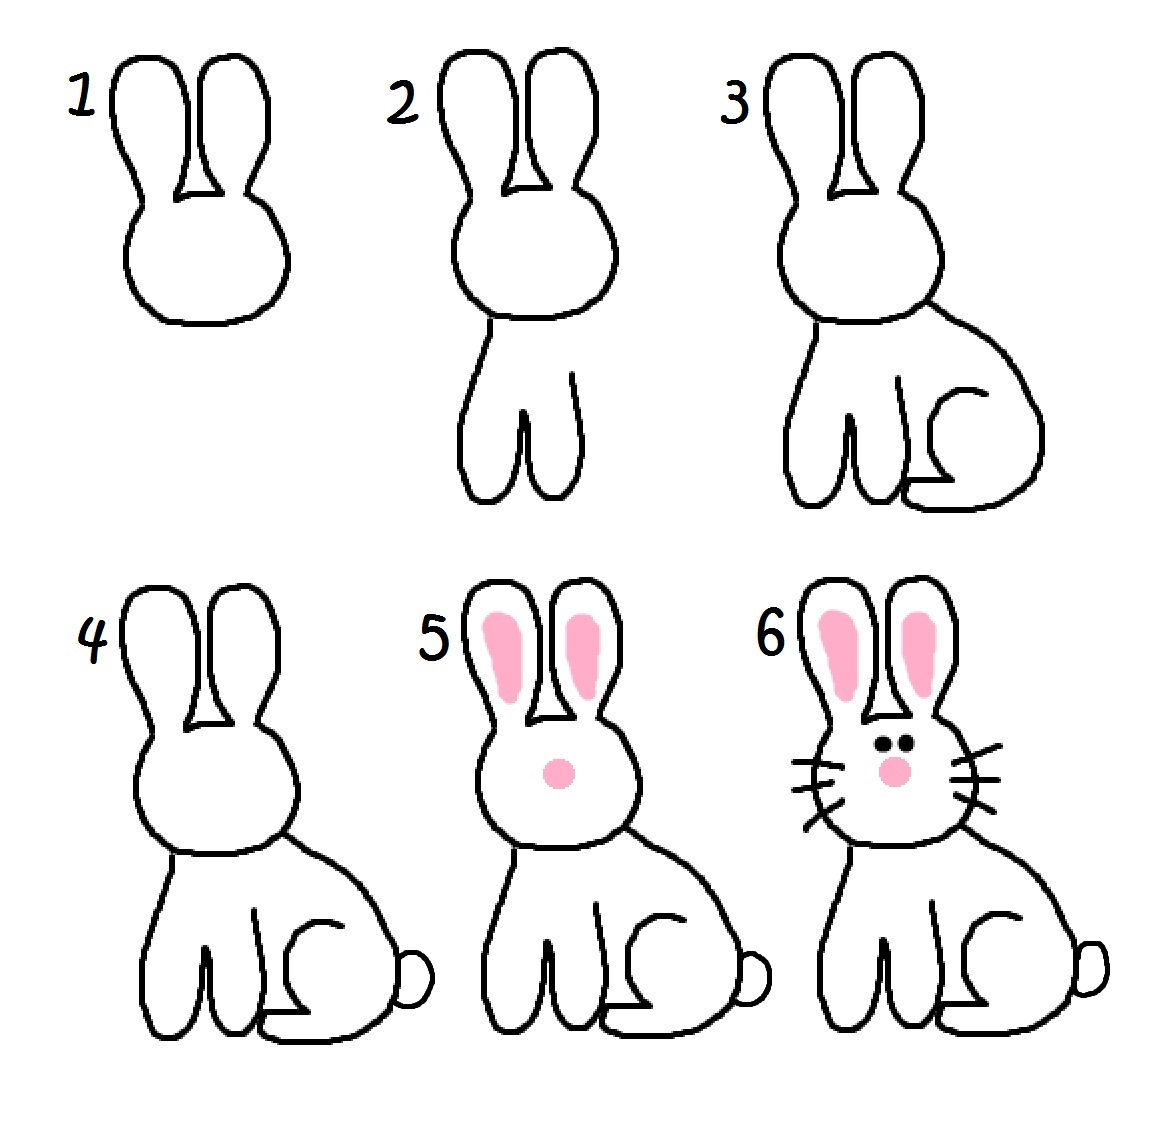 Как рисовать зайца карандашом поэтапно для детей: Как нарисовать зайца поэтапно 10 уроков